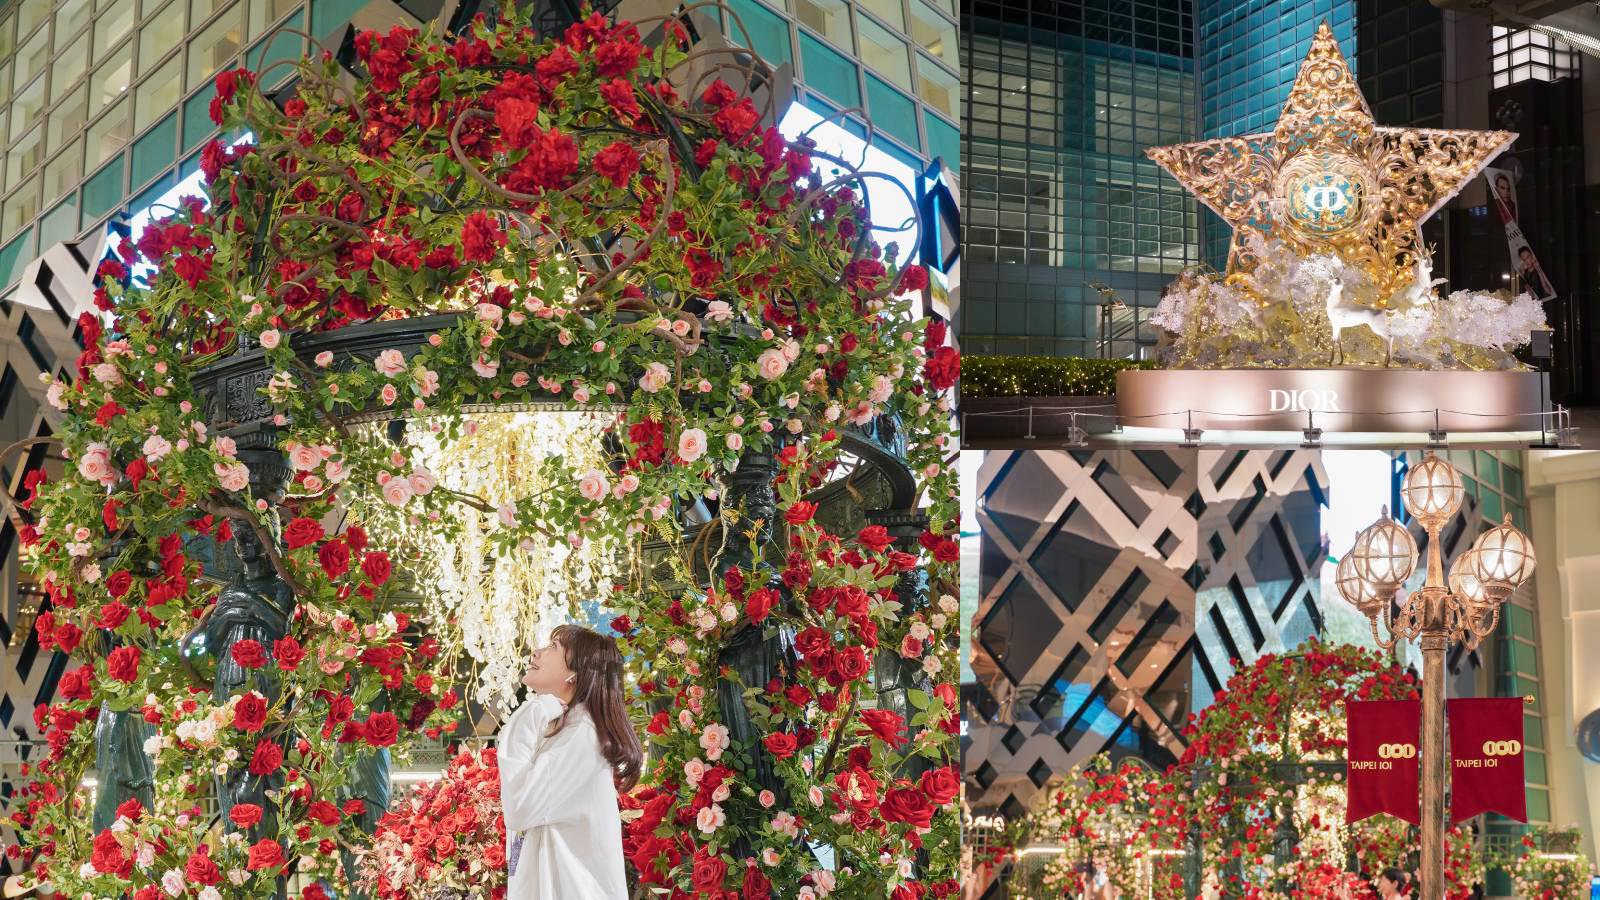 延伸閱讀：☆【台北聖誕】2021台北101宮廷風玫瑰花園、璀璨Dior聖誕樹登場